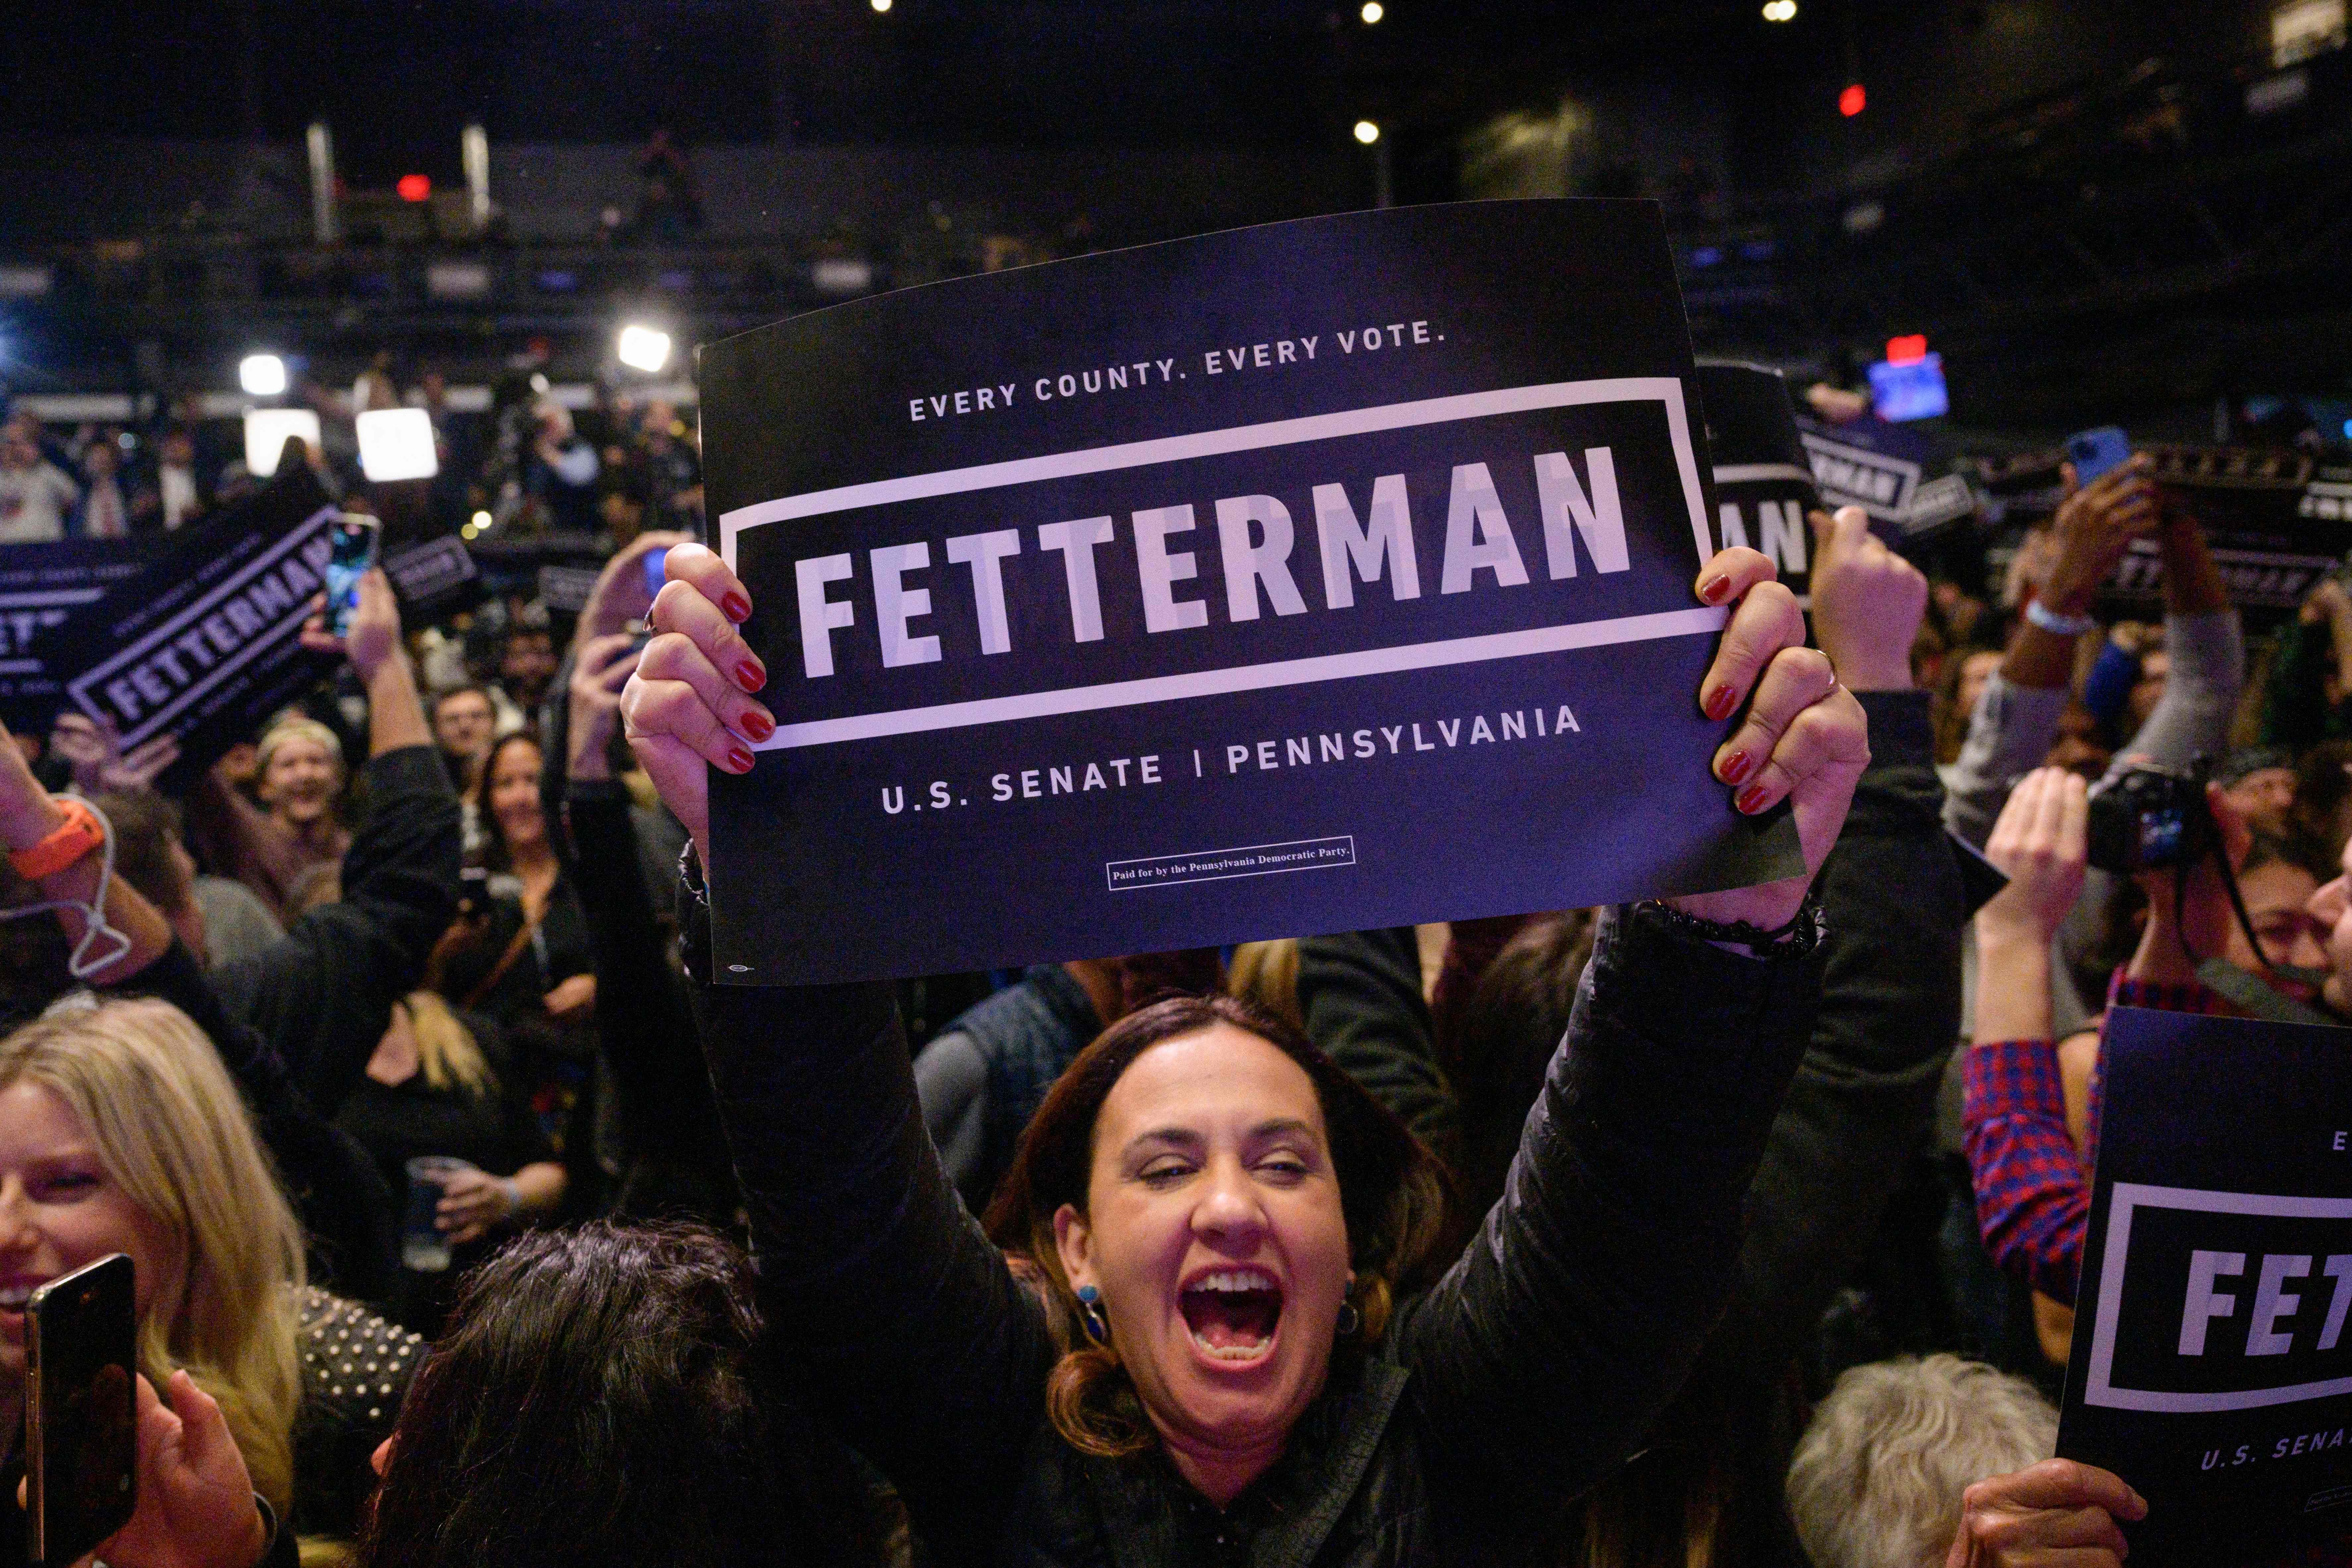 Fetterman supporters